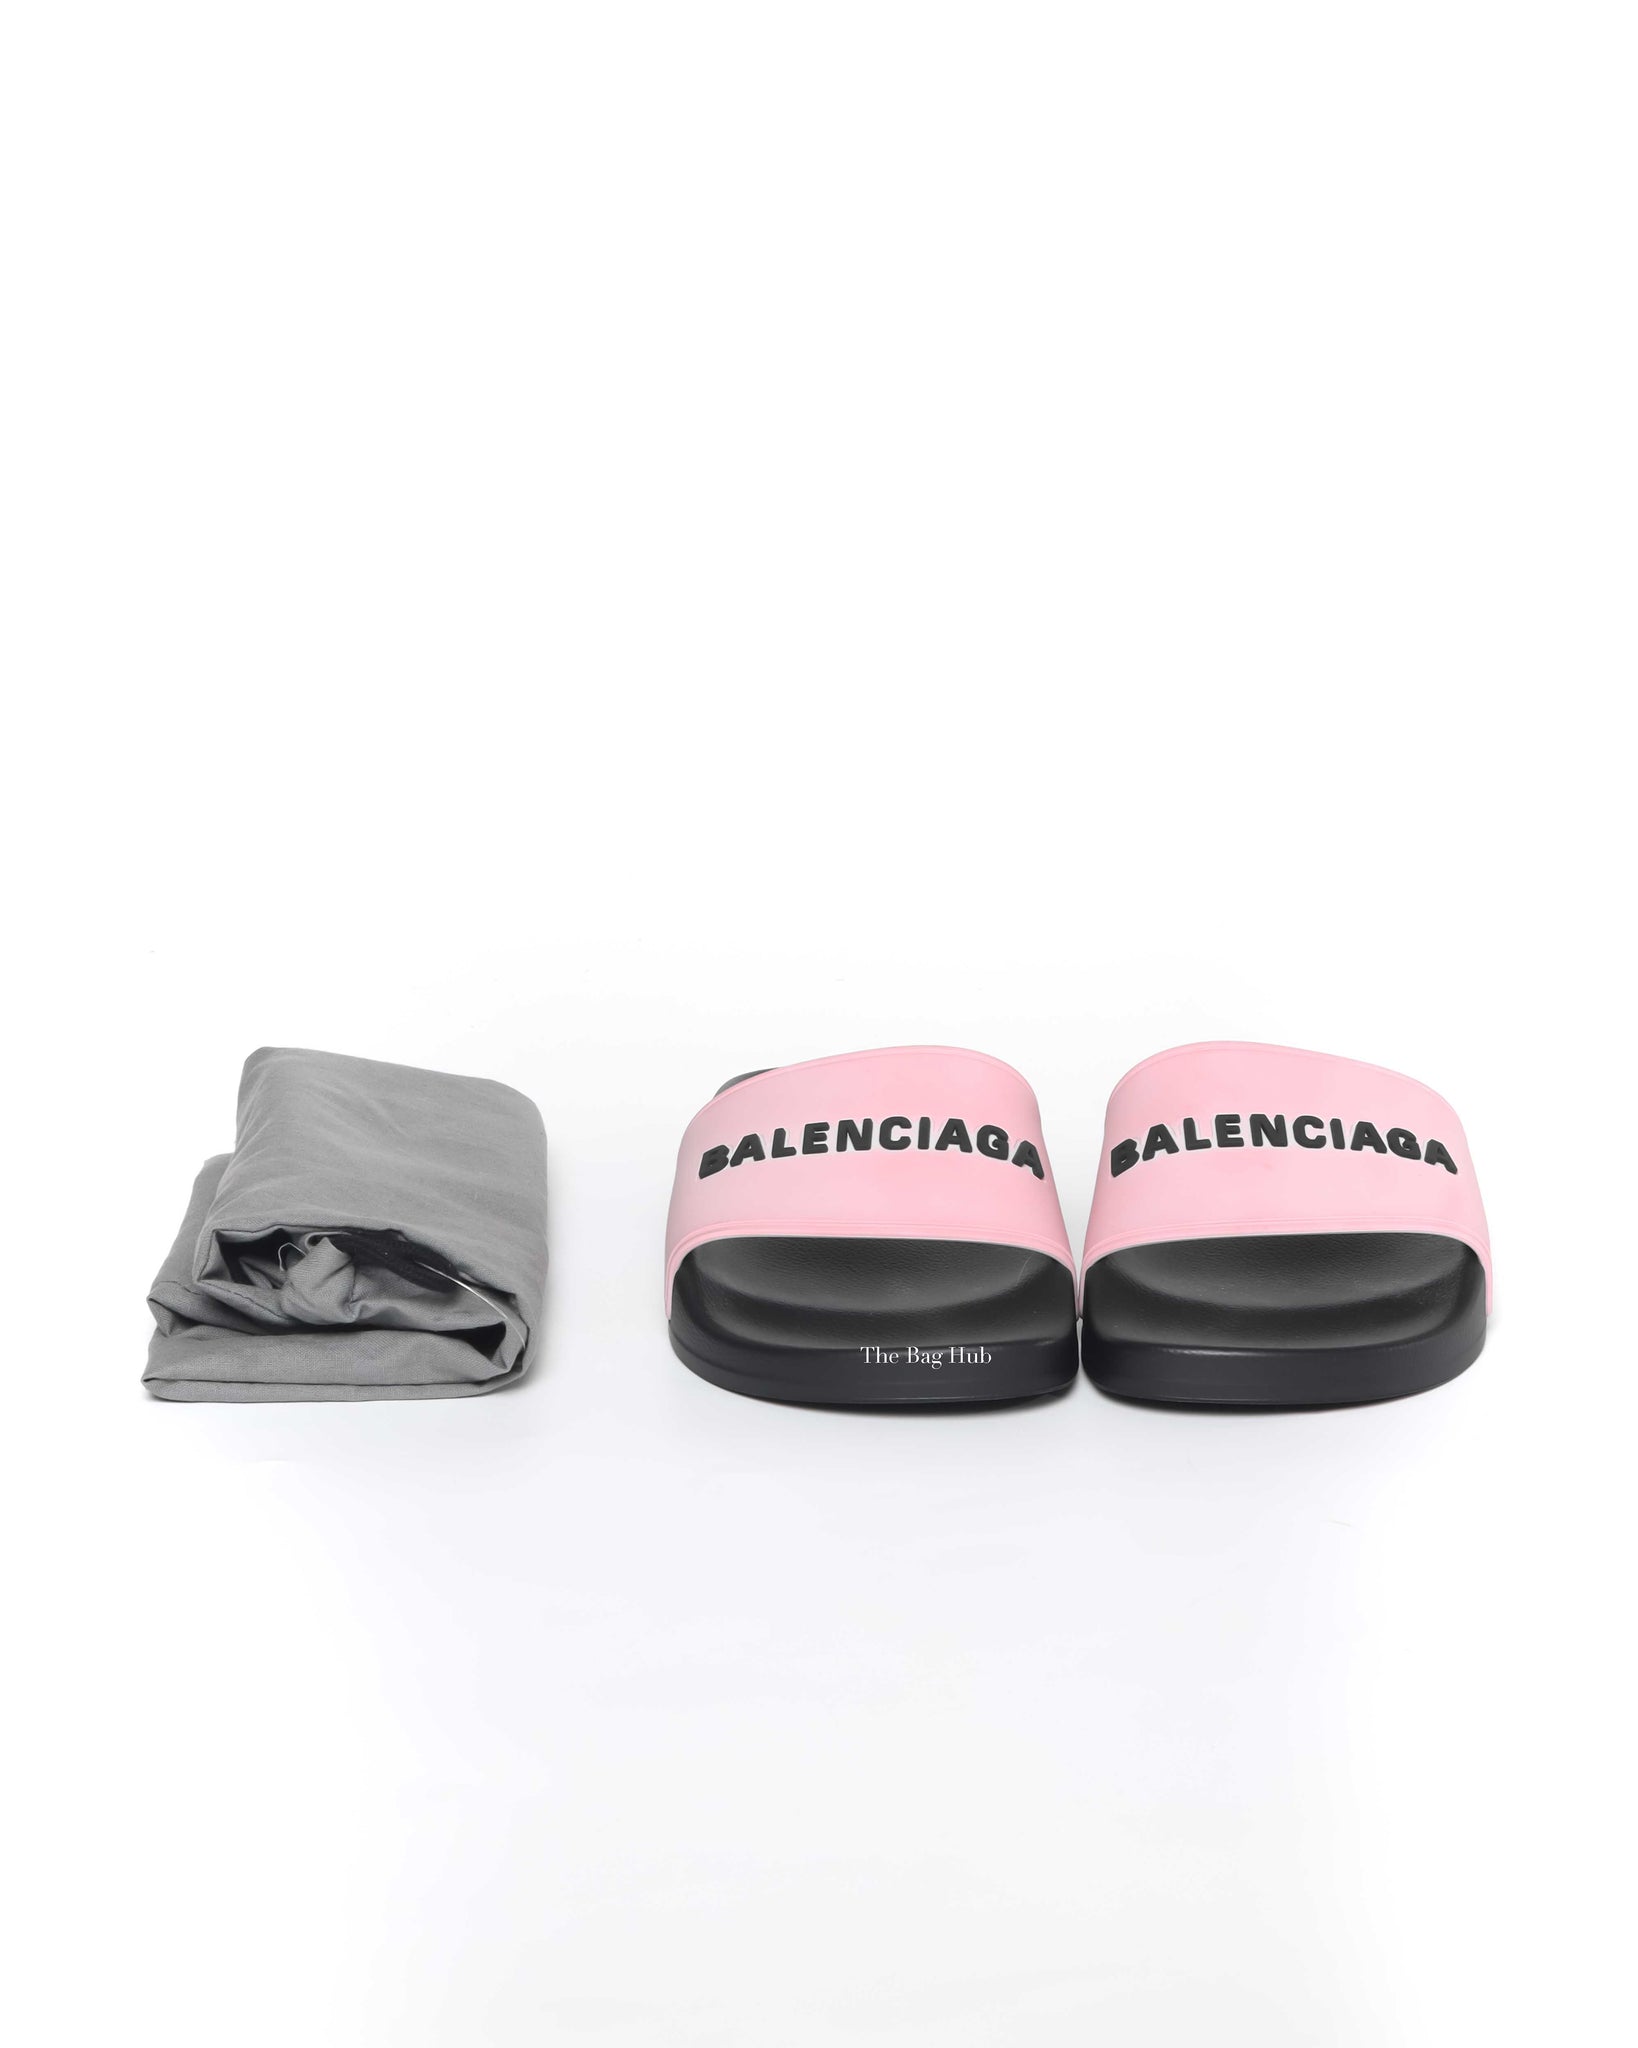 Balenciaga Black/Pink Rubber Women's Pool Slides Size 35-9